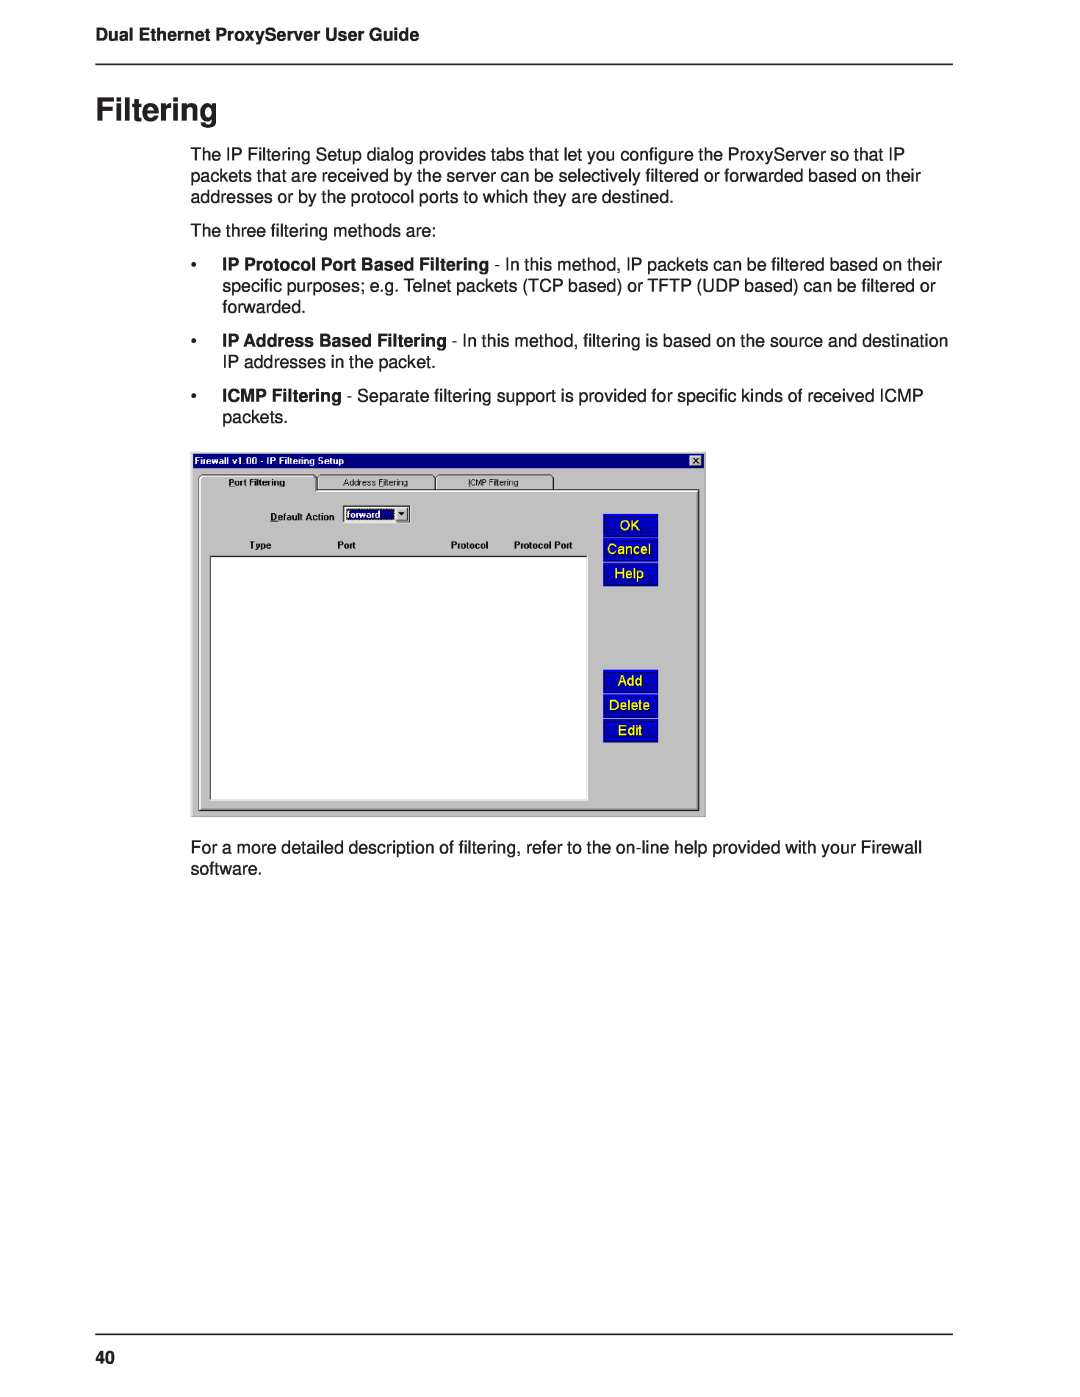 Multitech MTPSR1-120 manual Filtering, Dual Ethernet ProxyServer User Guide 